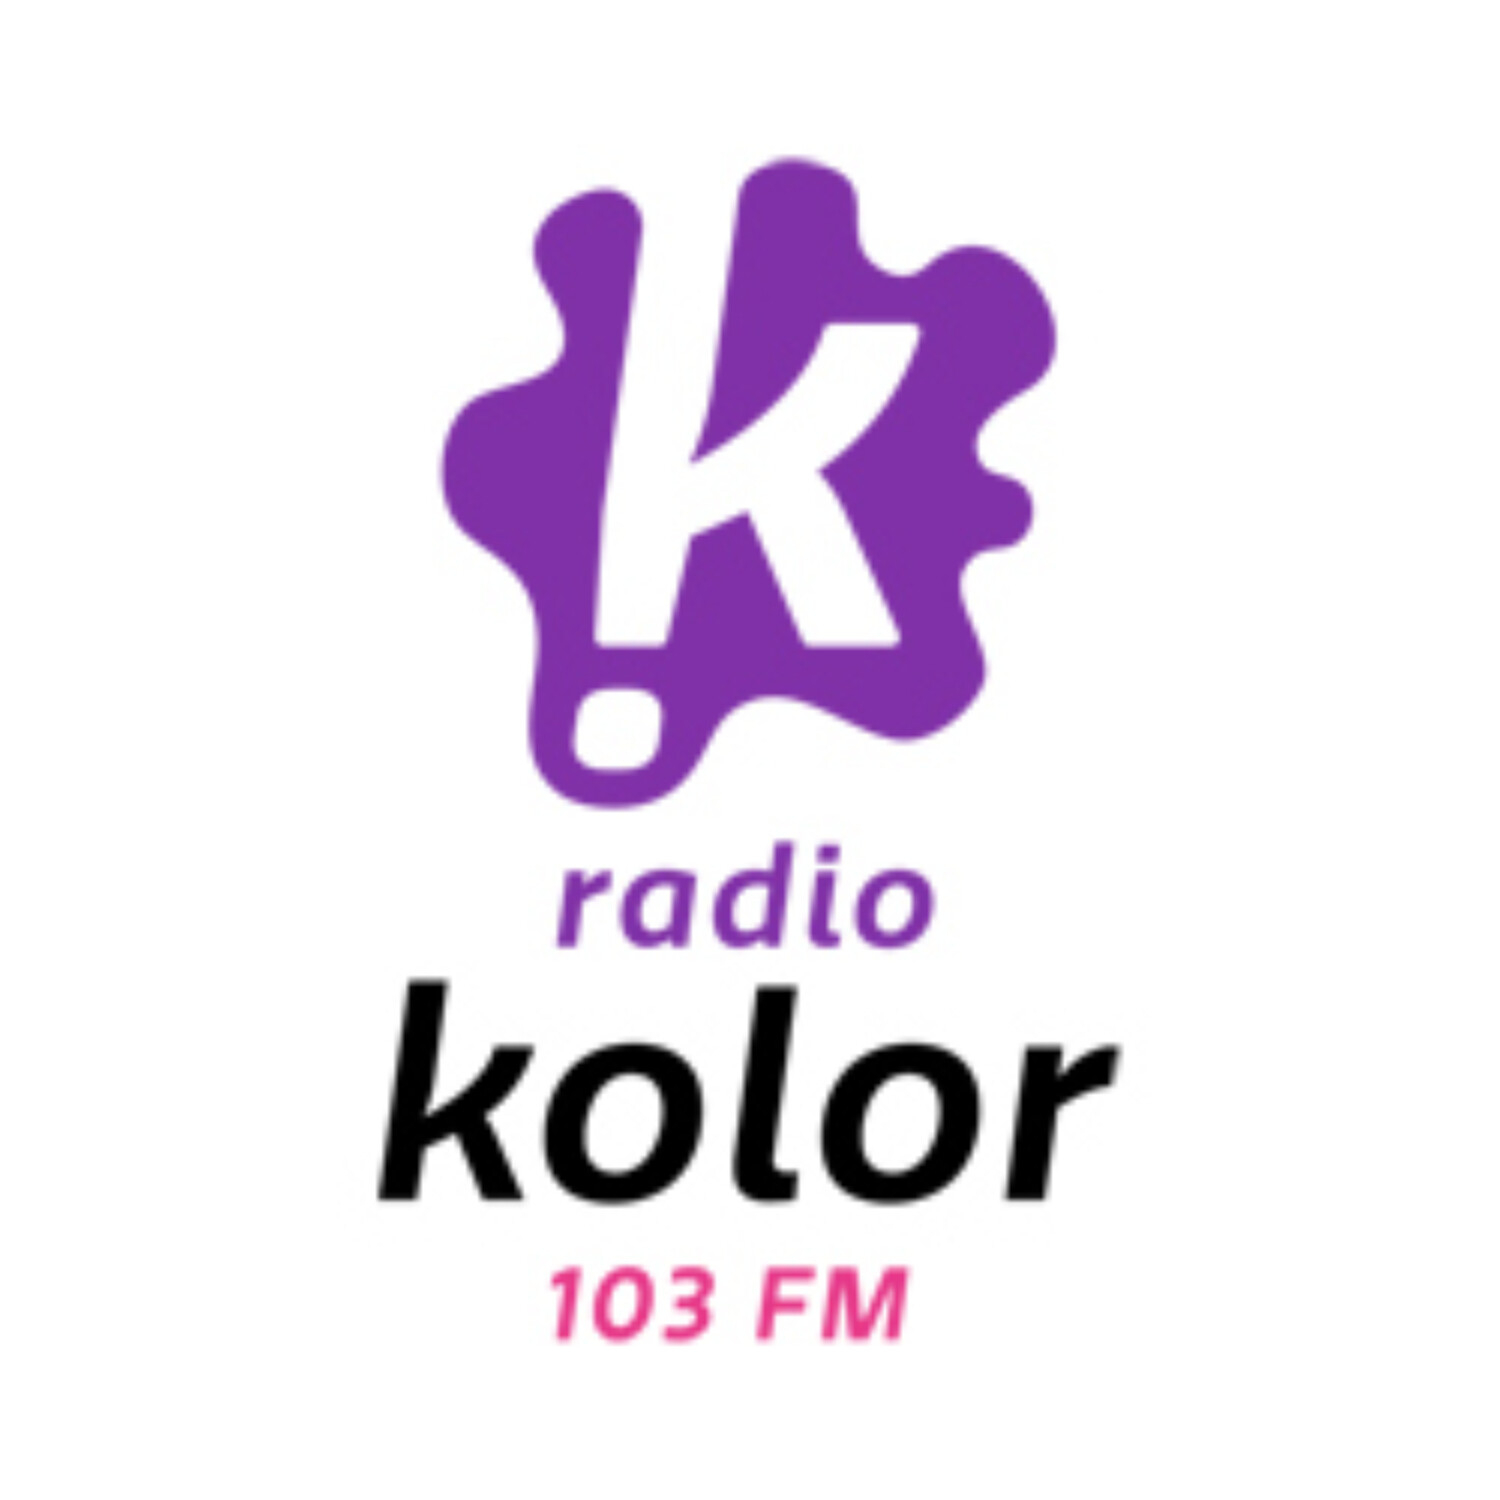 Podcast Radio Kolor 103 FM